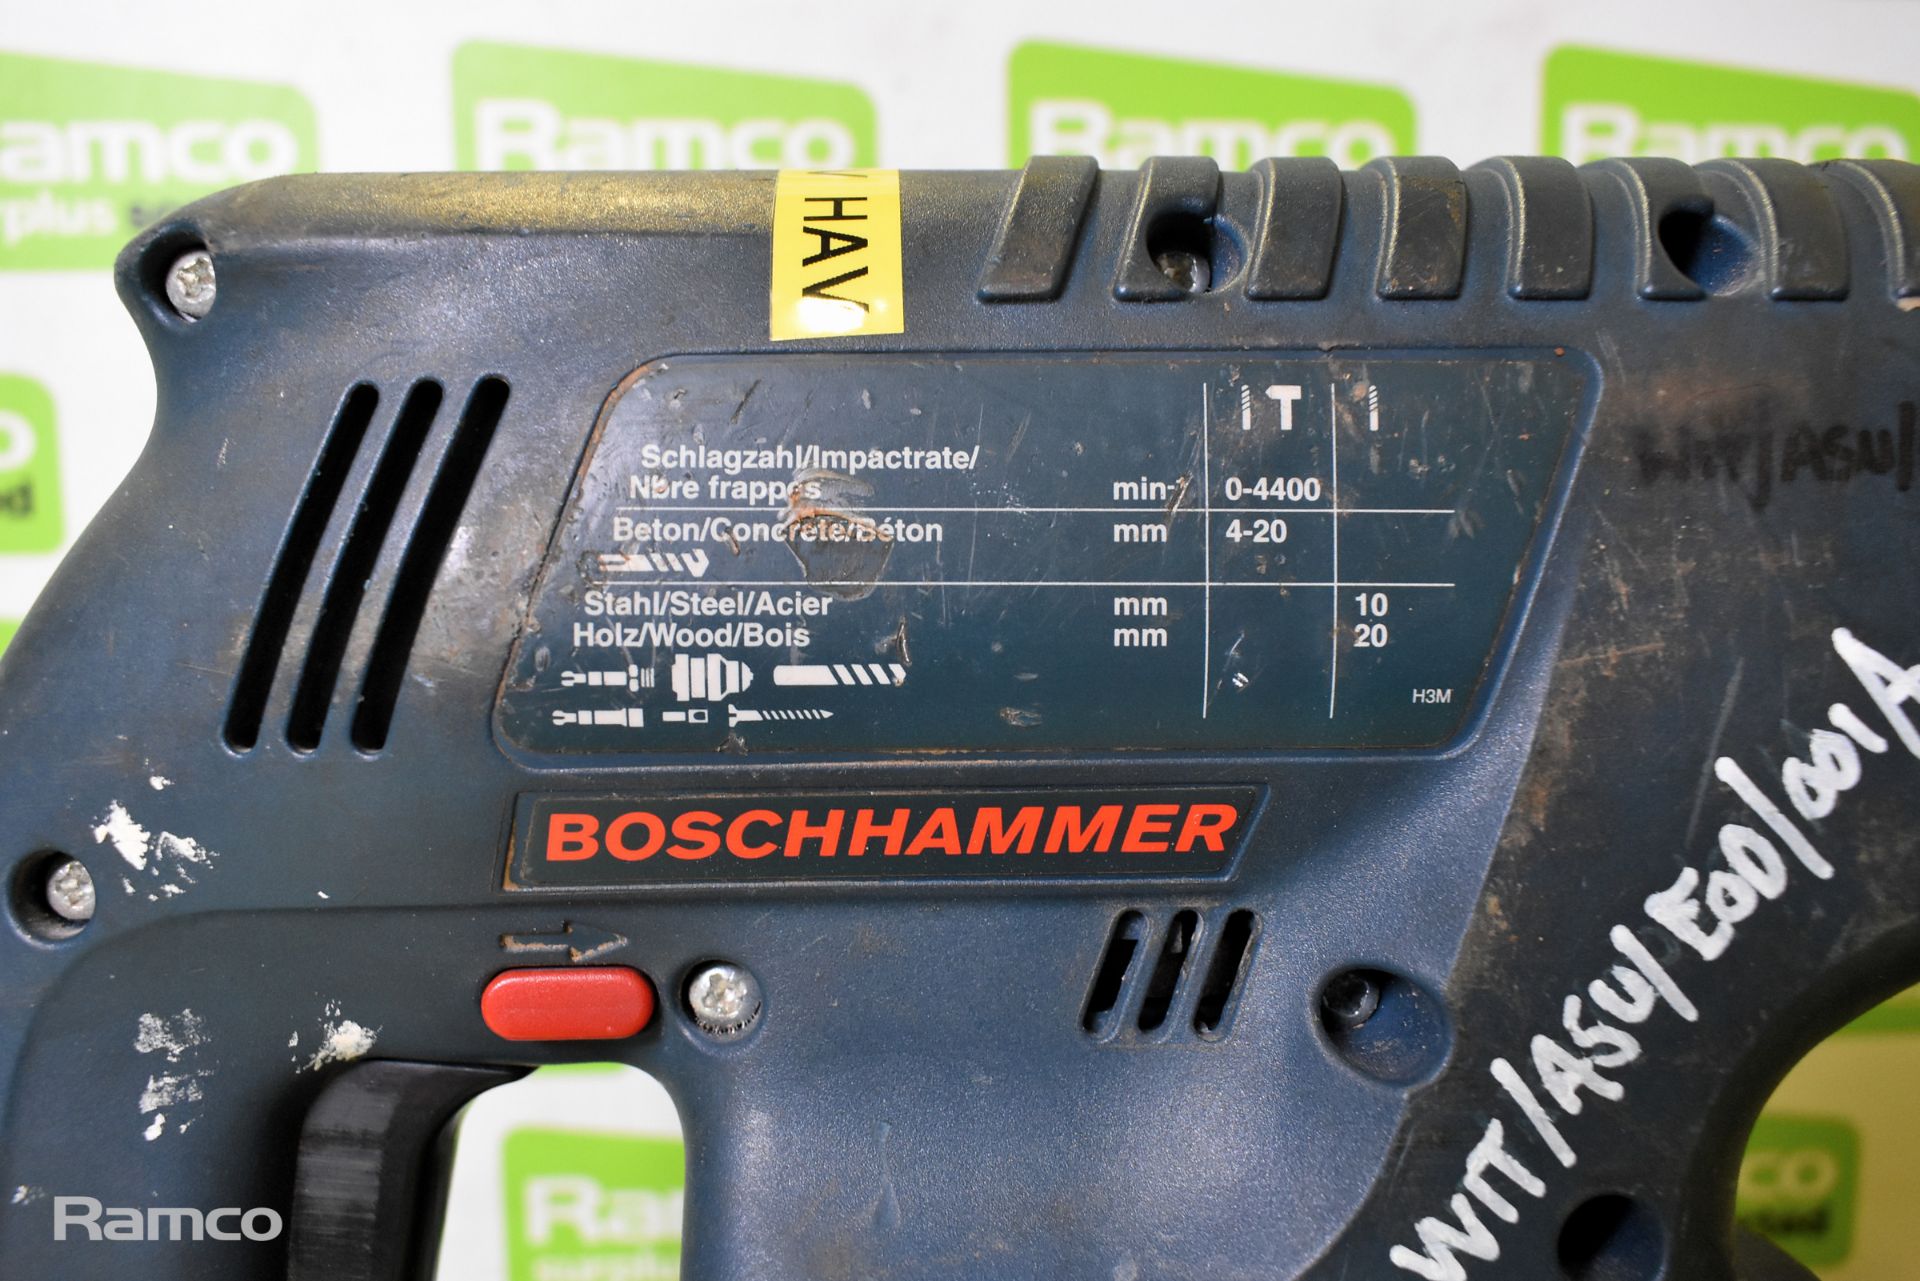 Makita HHR2450 110V electric rotary hammer drill & Bosch Hammer GBH 24 VRE 24V cordless drill - Image 9 of 10